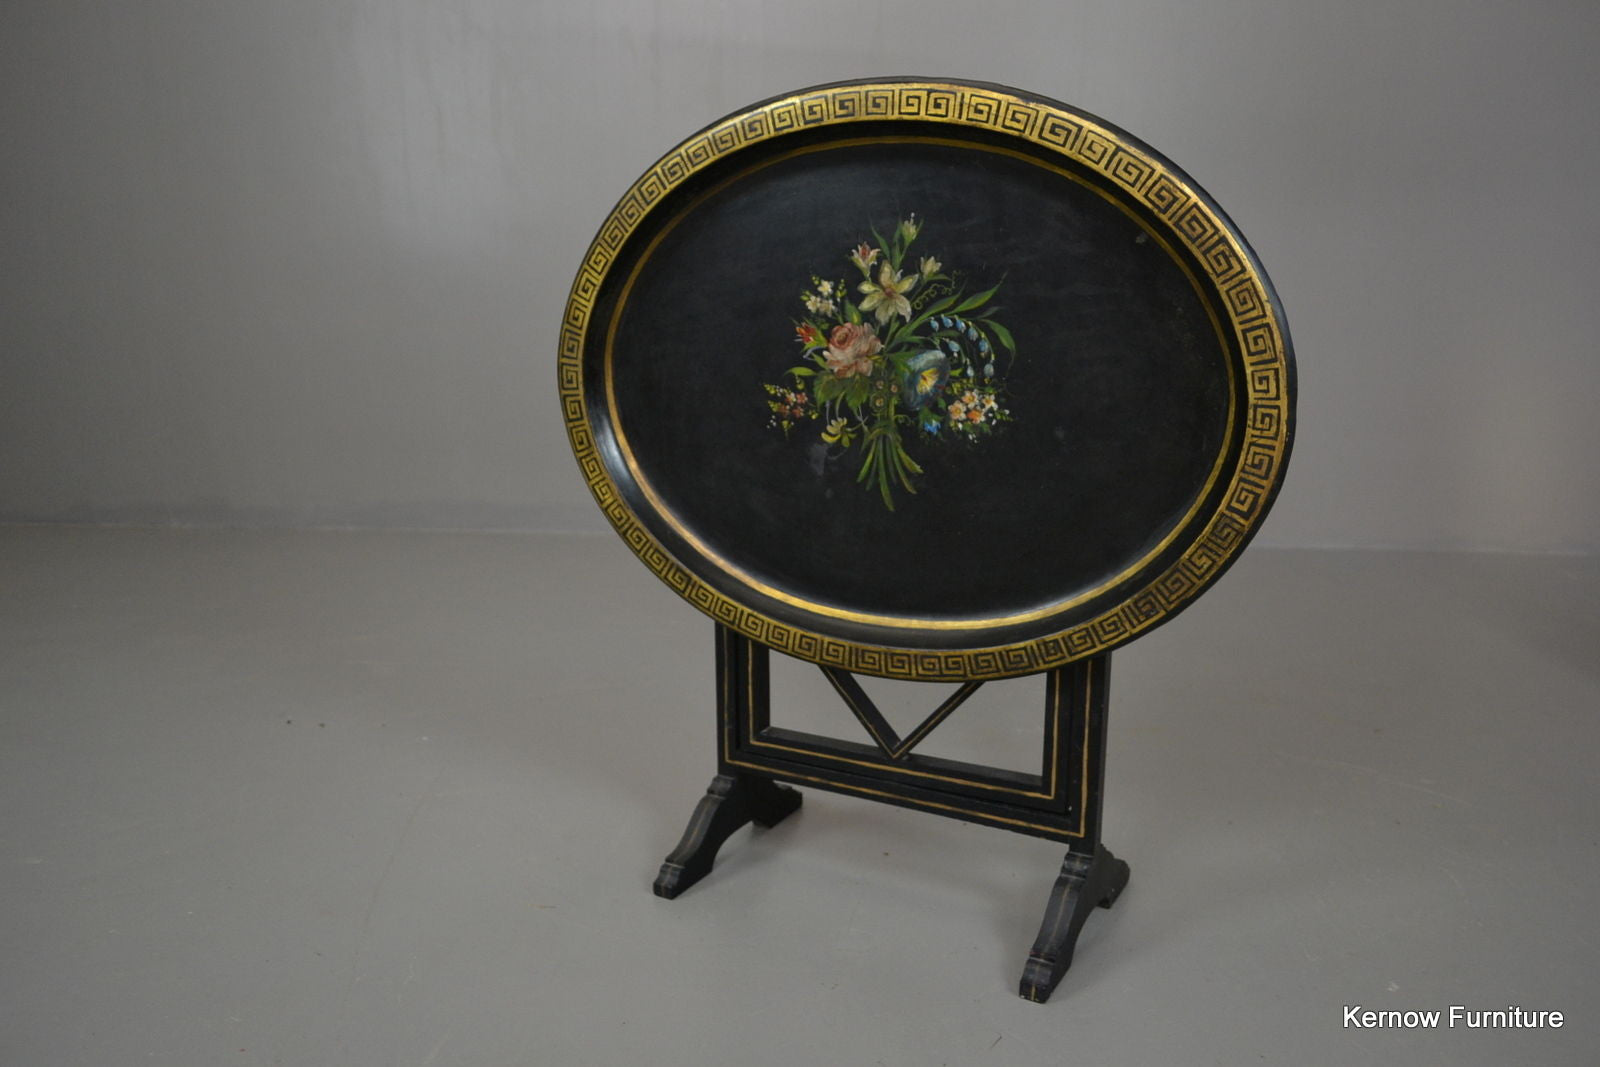 Black & Gold Antique Style Tilt Top Side Table - Kernow Furniture